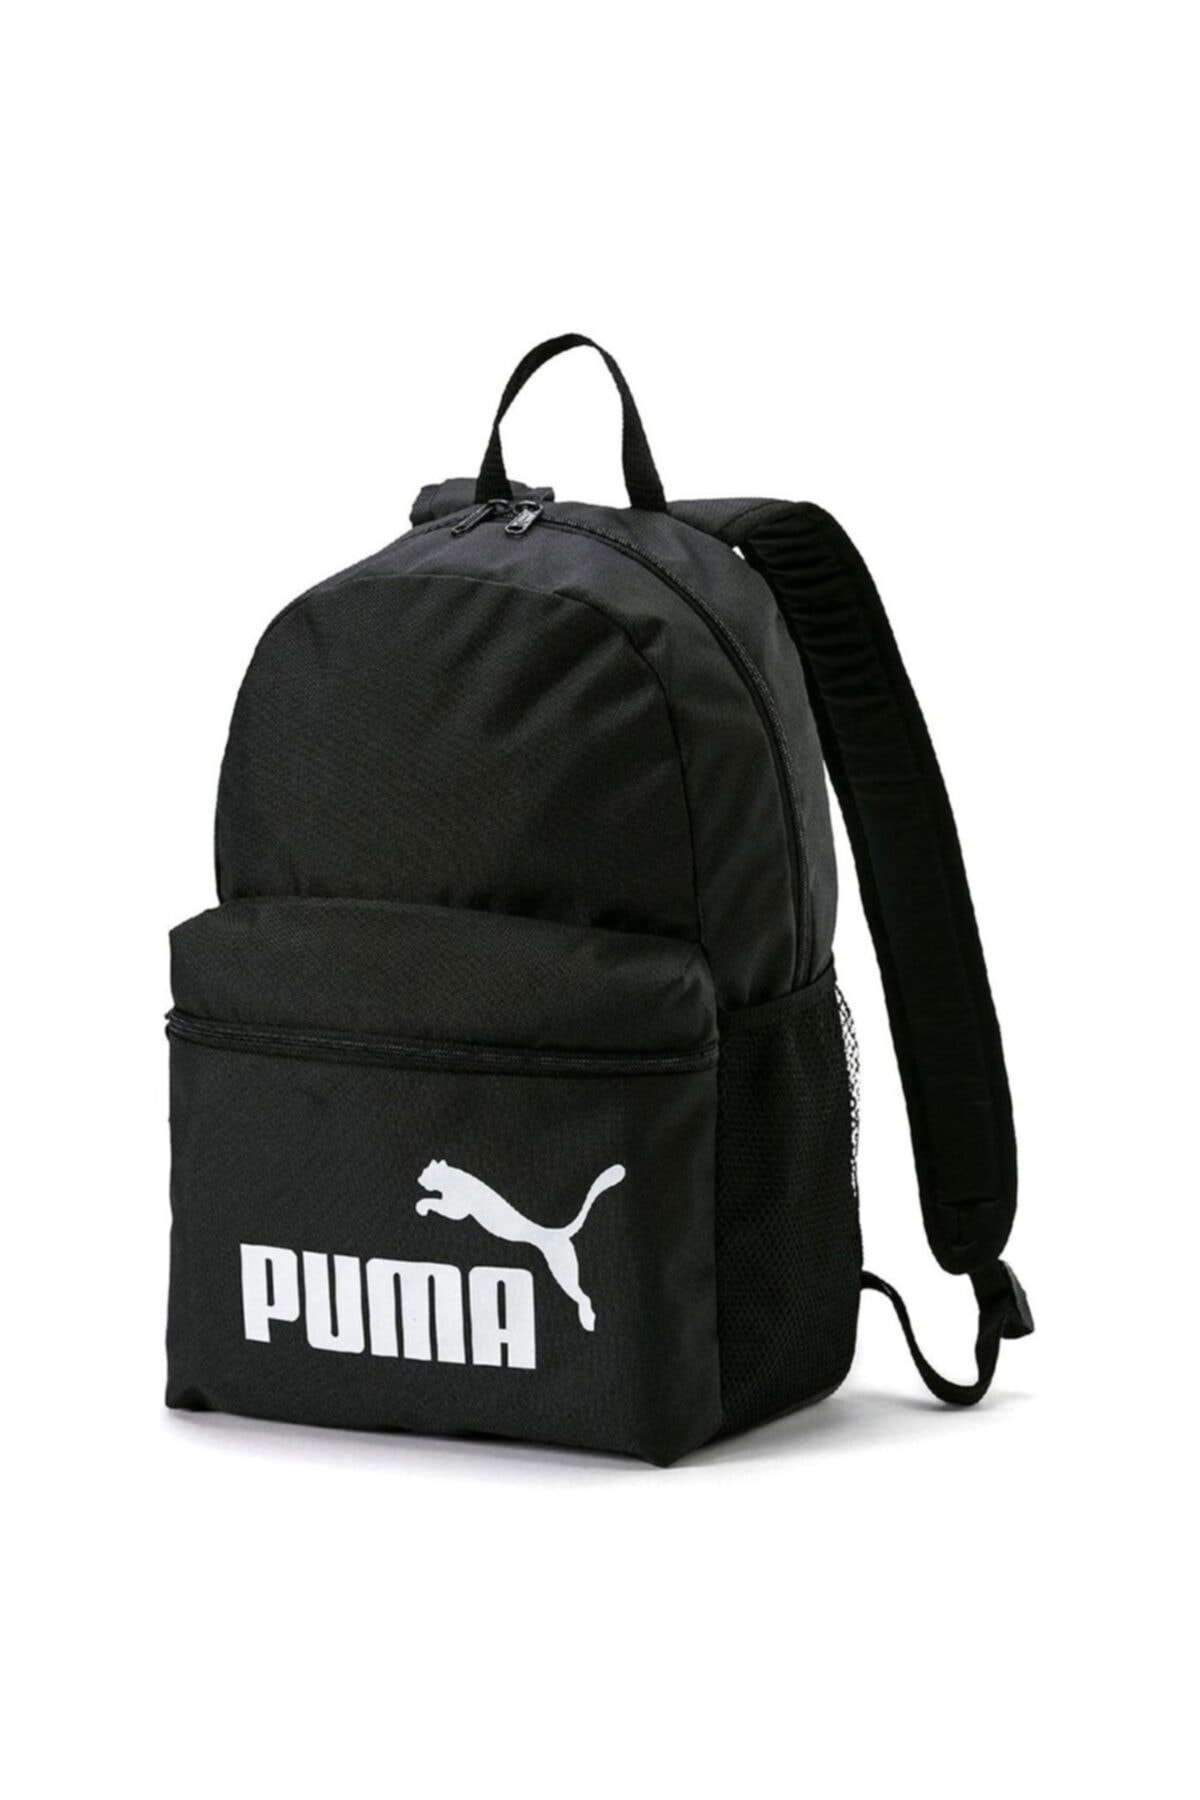 Puma 07548701 Phase Backpack